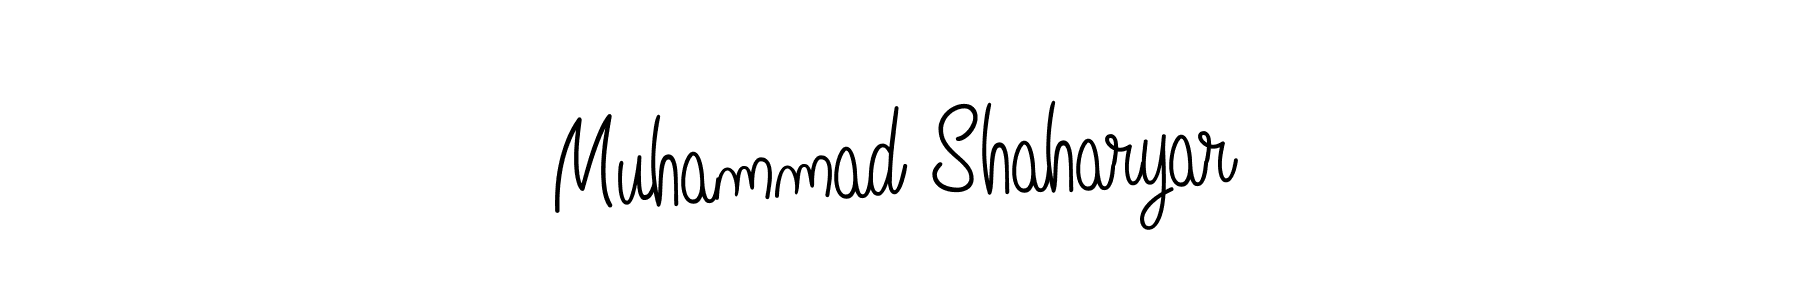 96+ Muhammad Shaharyar Name Signature Style Ideas | Professional Name ...